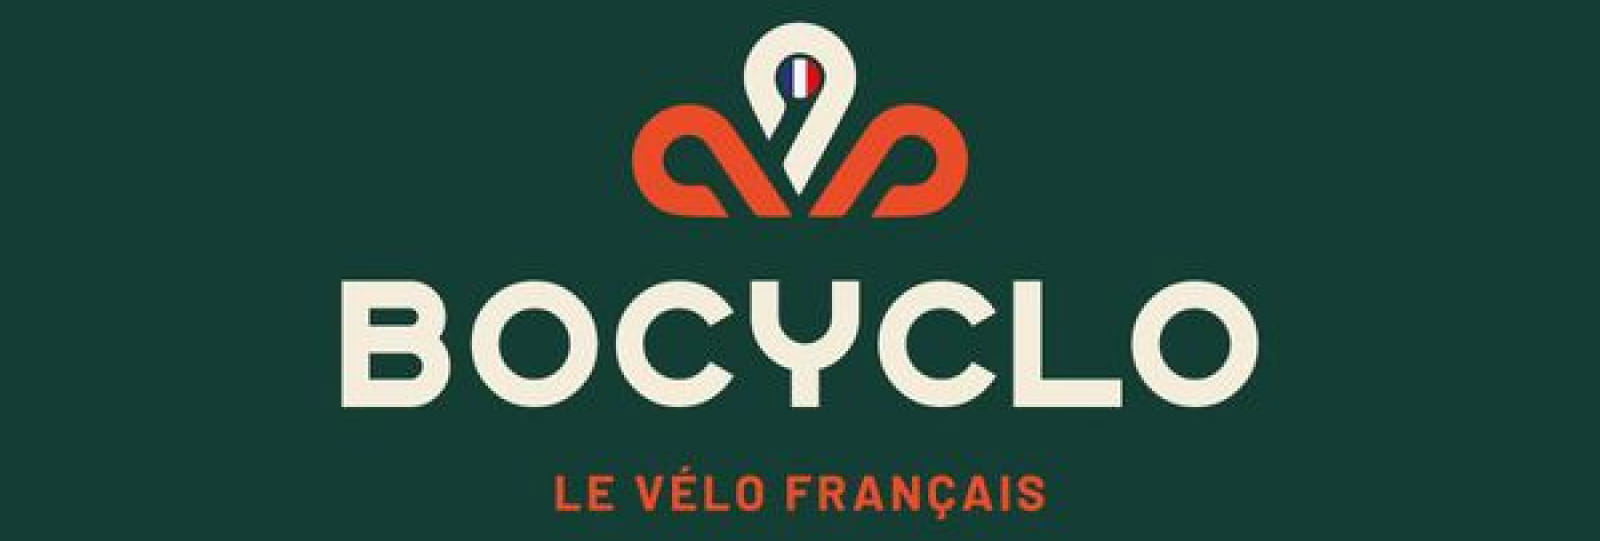 Bocyclo - Fabricant de vélos français